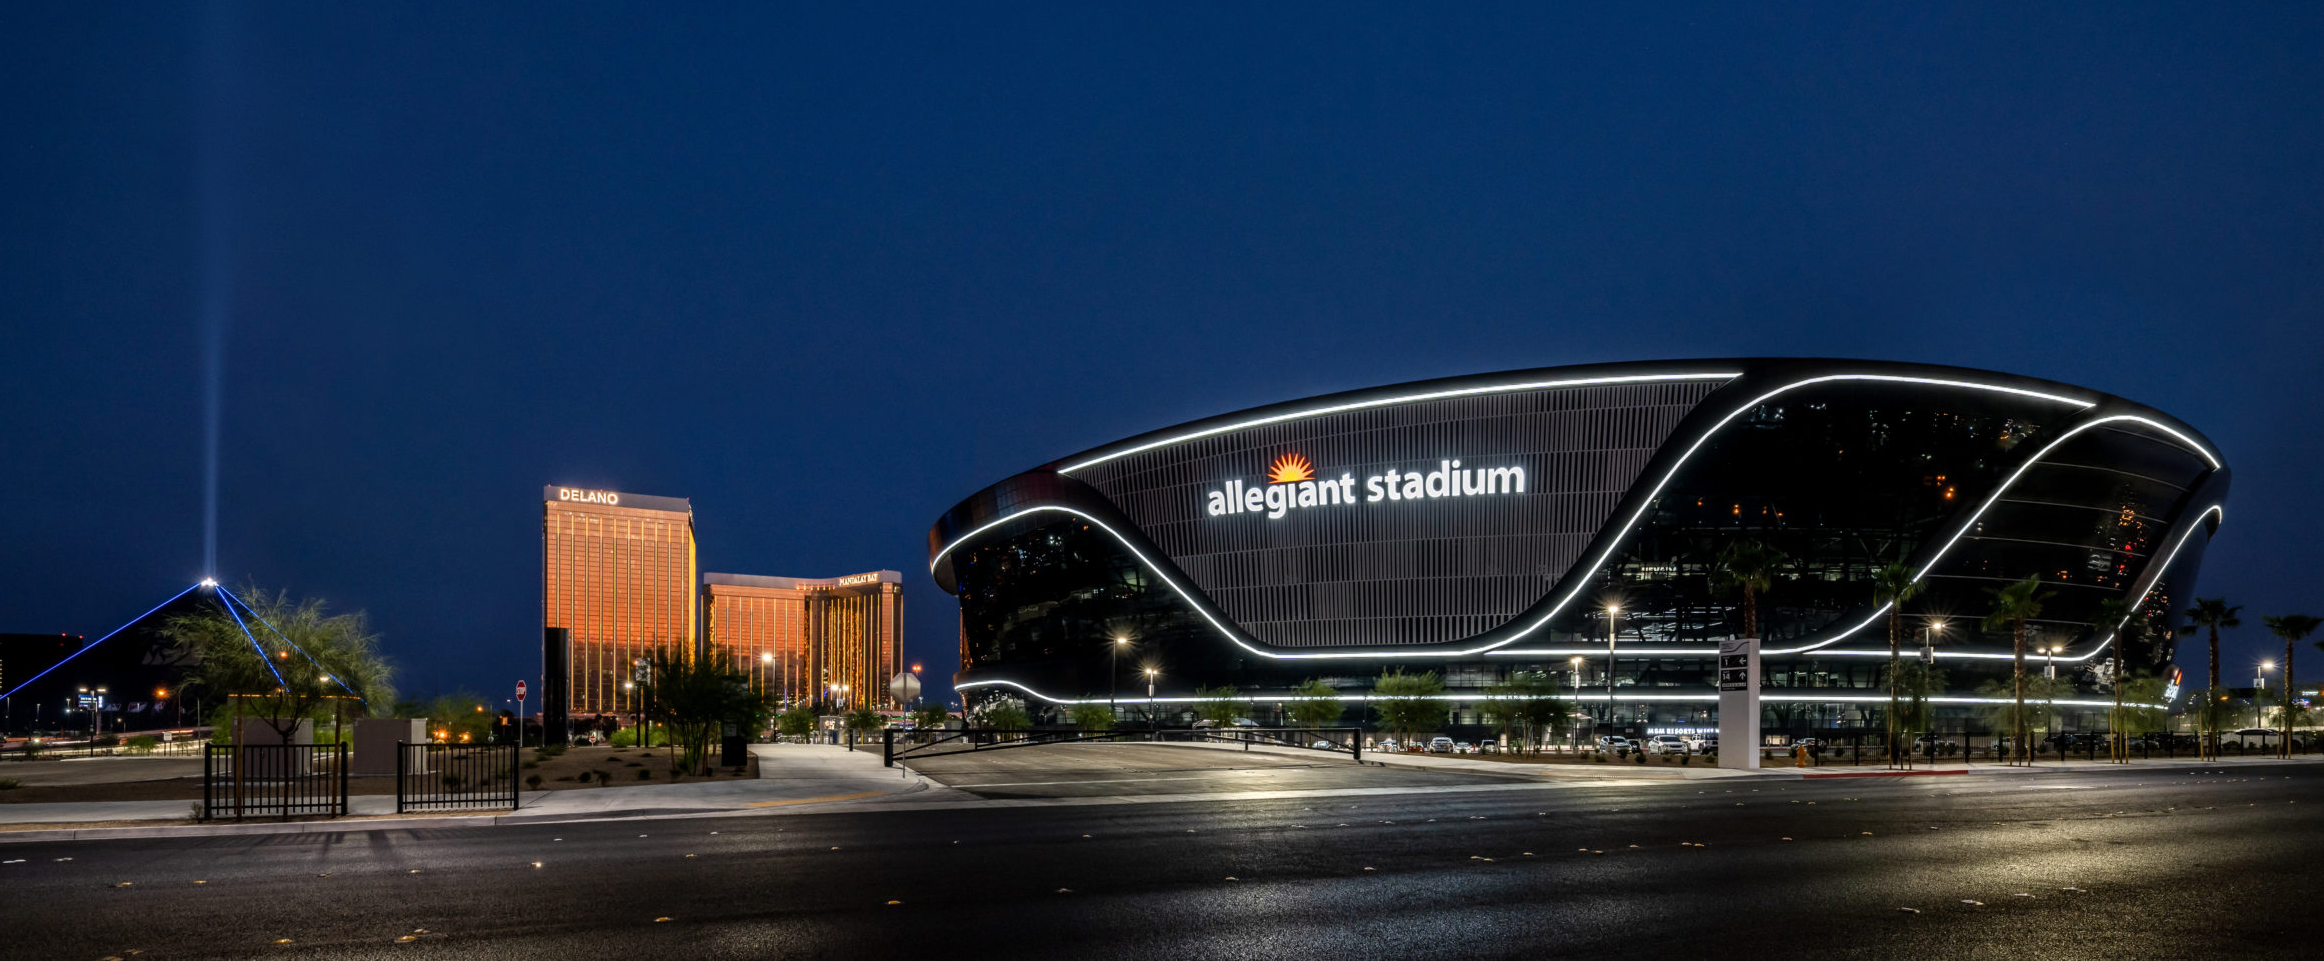 Work is complete on the Las Vegas Raiders' Allegiant Stadium